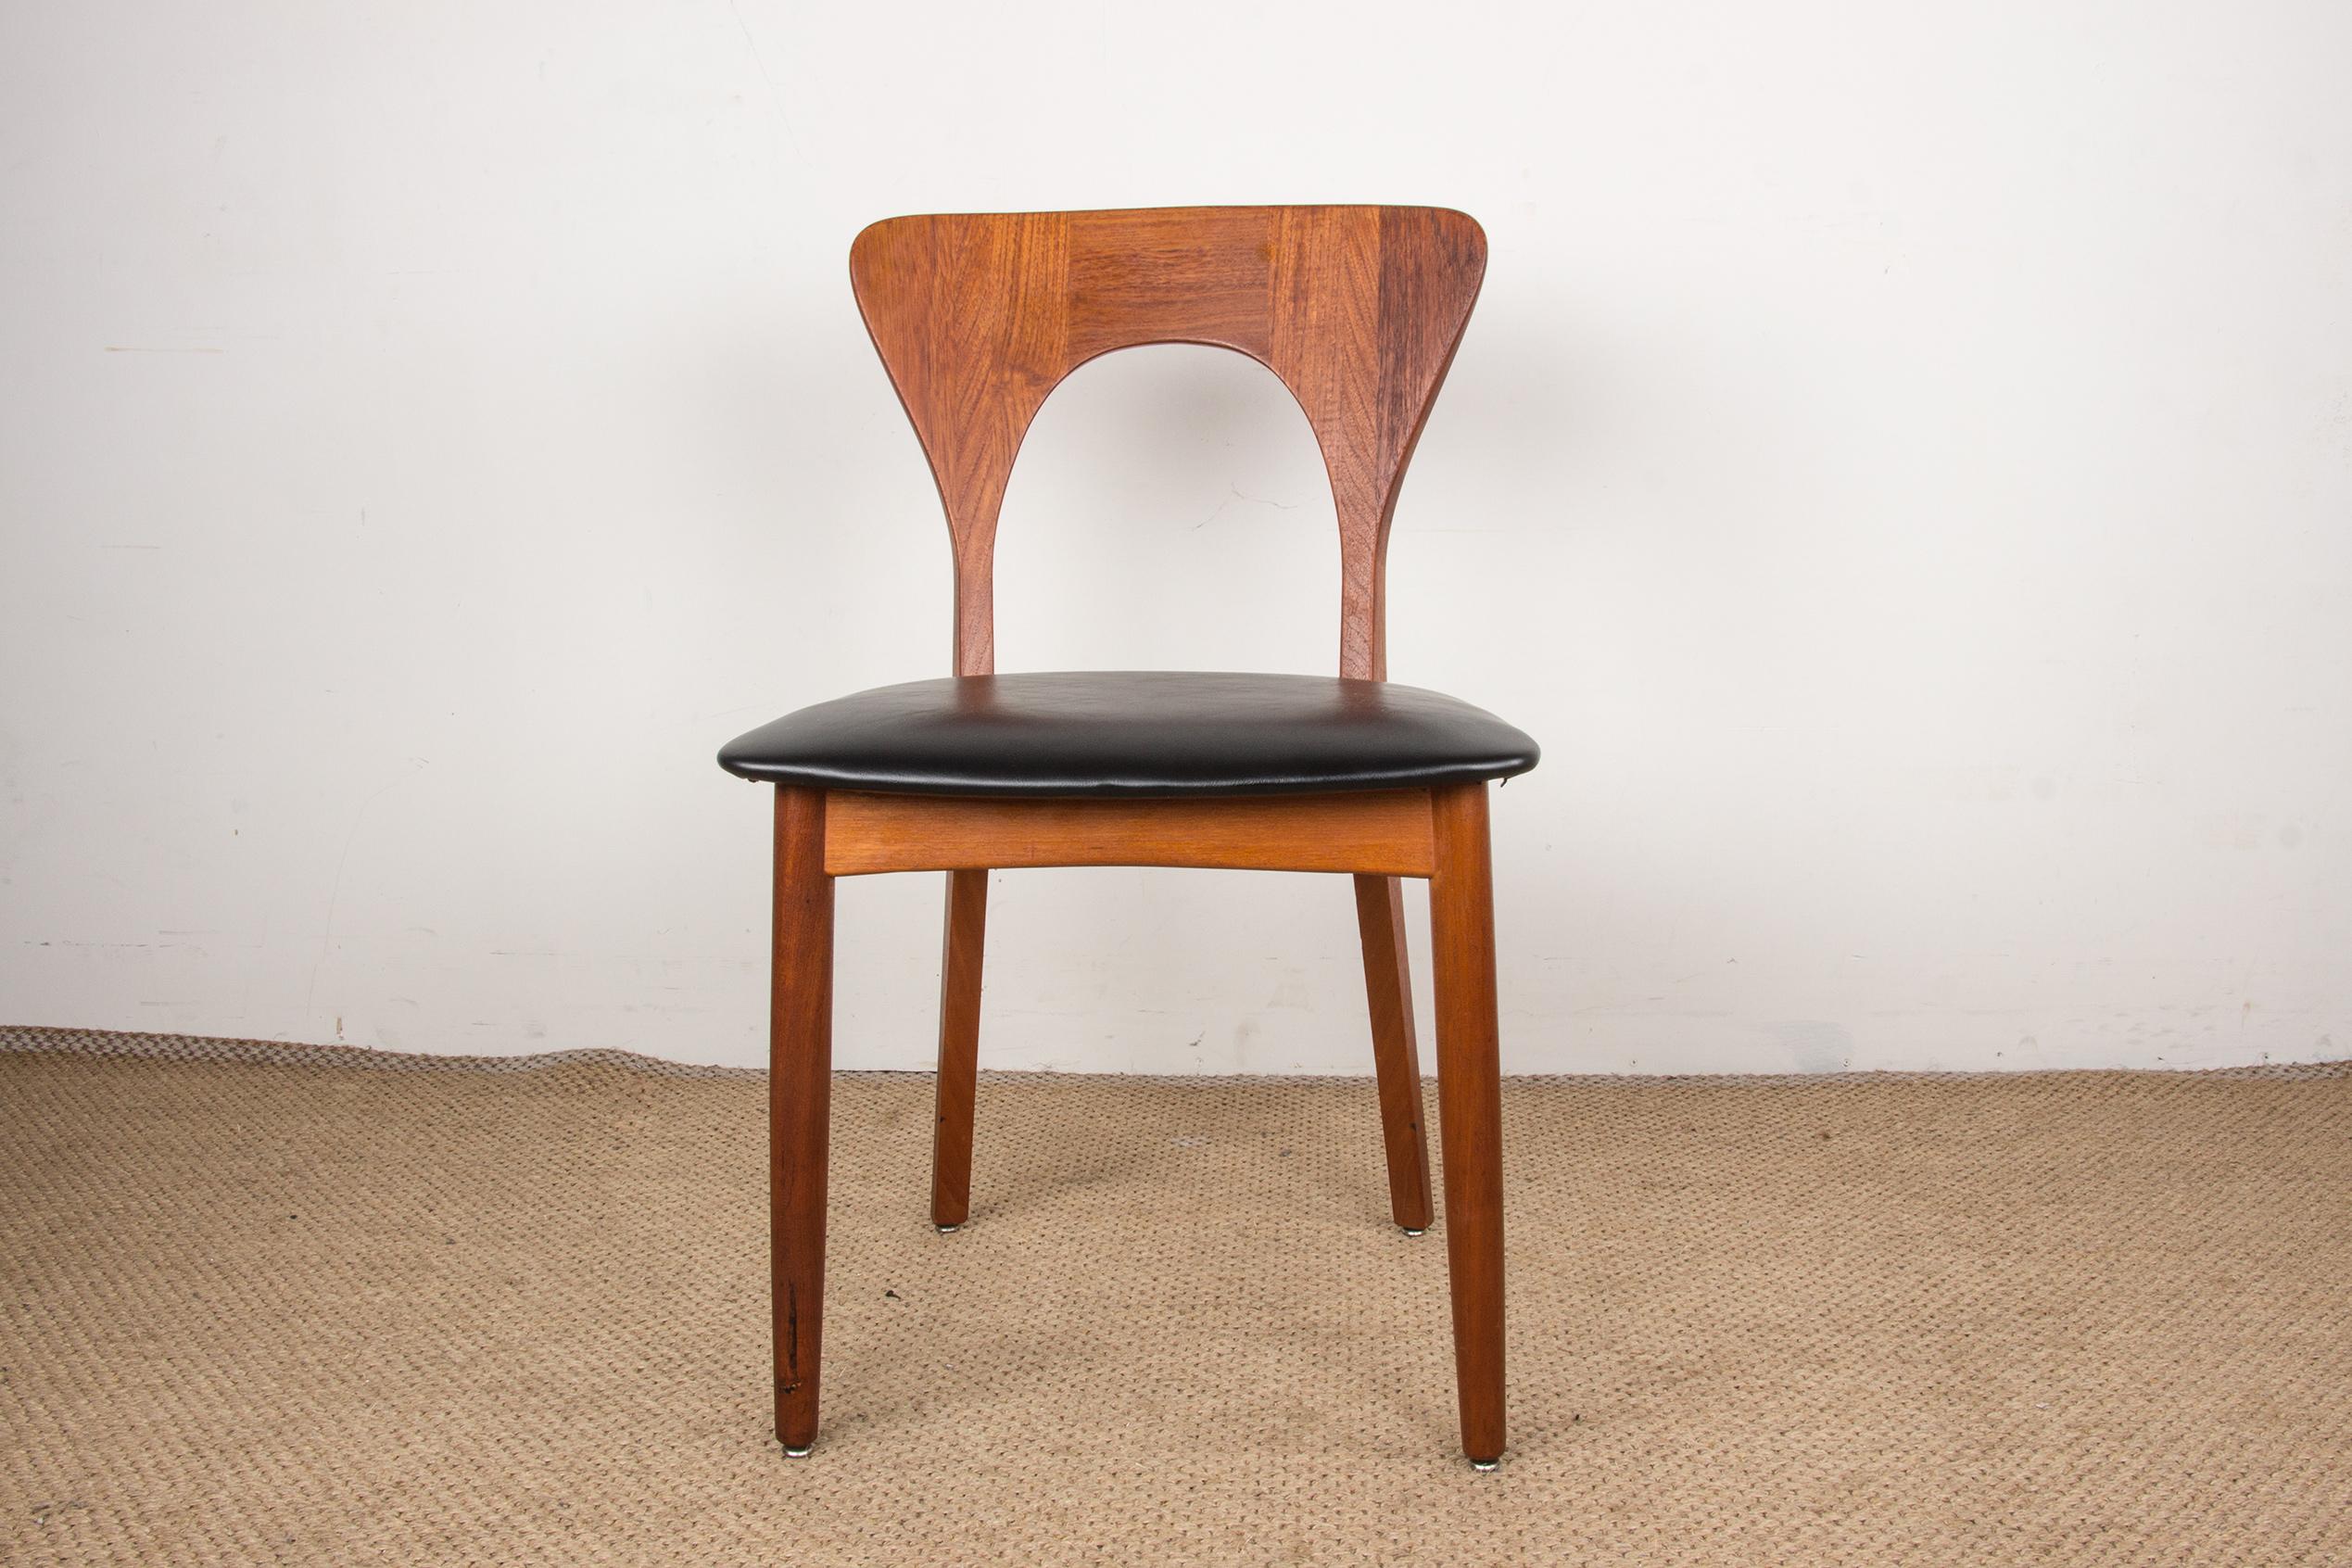 Mid-20th Century Series of 6 Danish chairs in Teak and skai, Peter model by Niels Koefoed 1960.